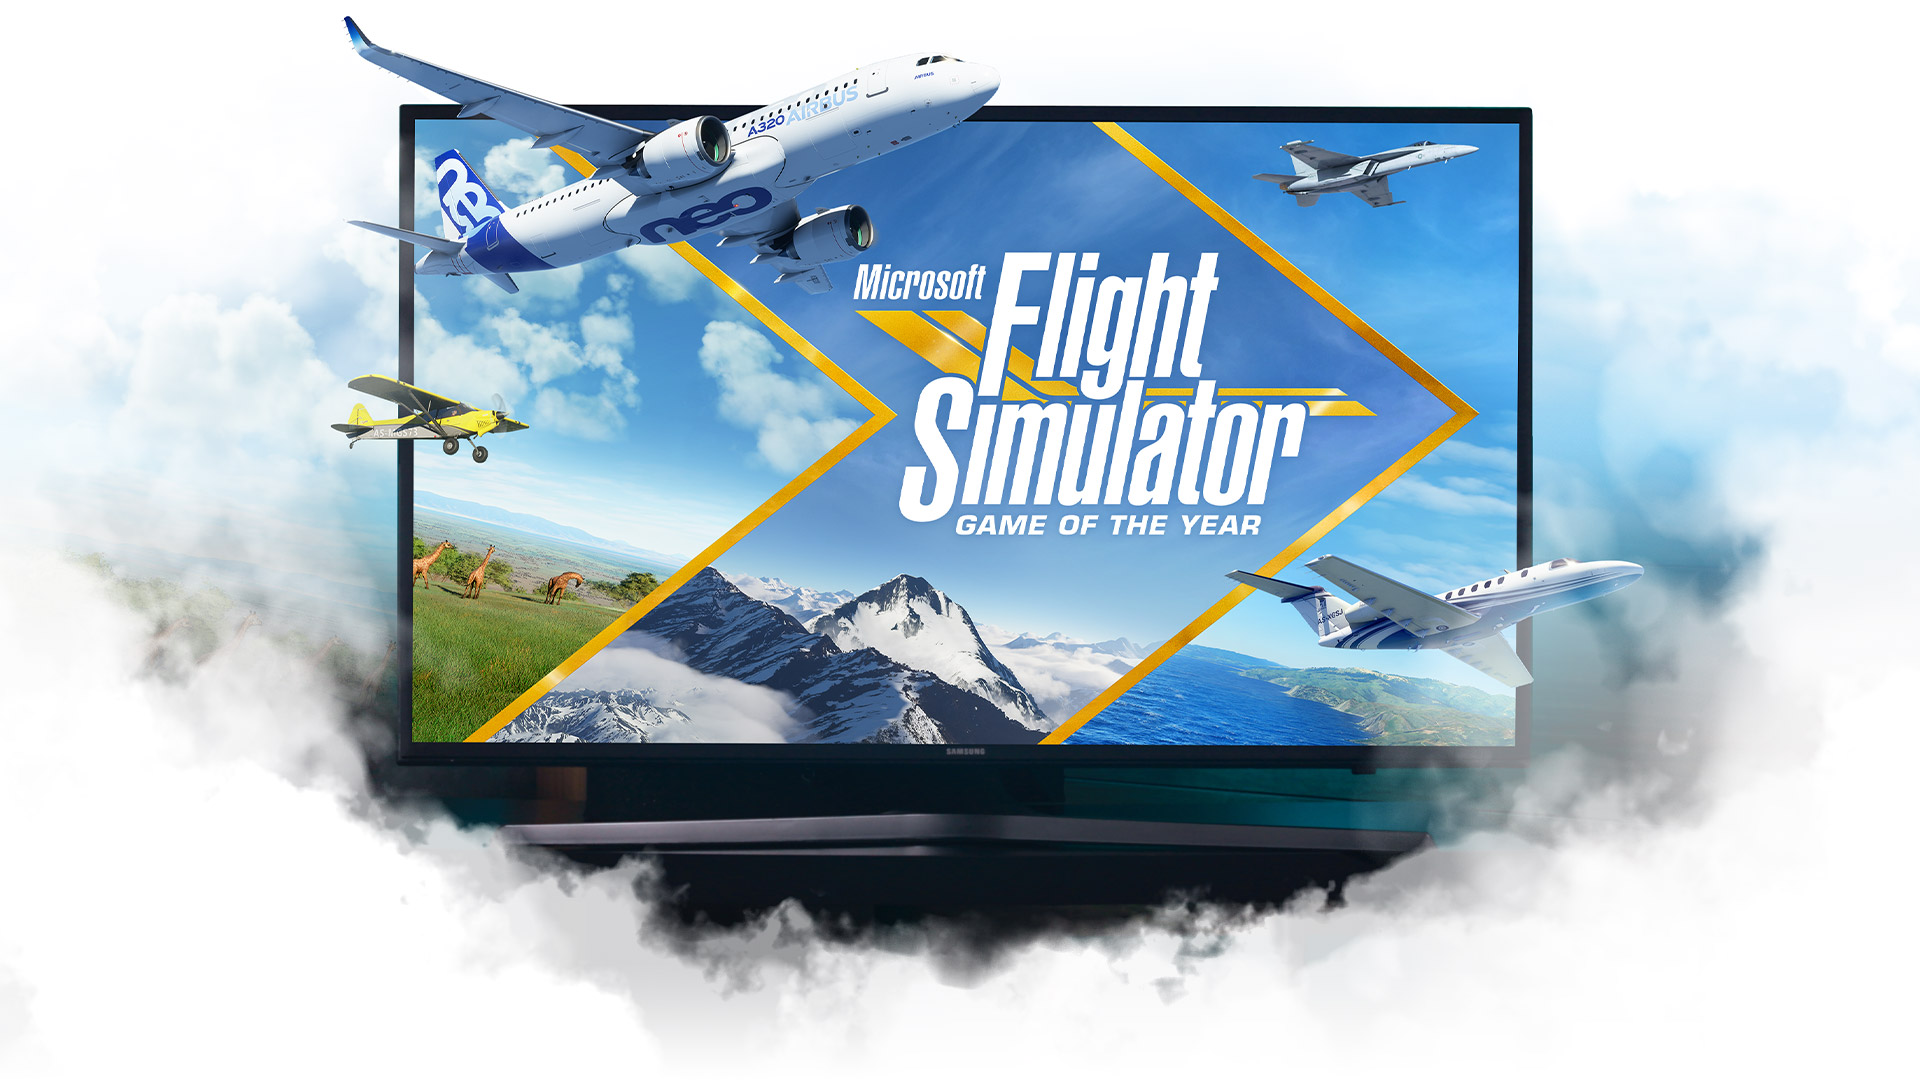 구름으로 둘러싸인 TV에서 떠오르는 Microsoft Flight Simulator 비행기